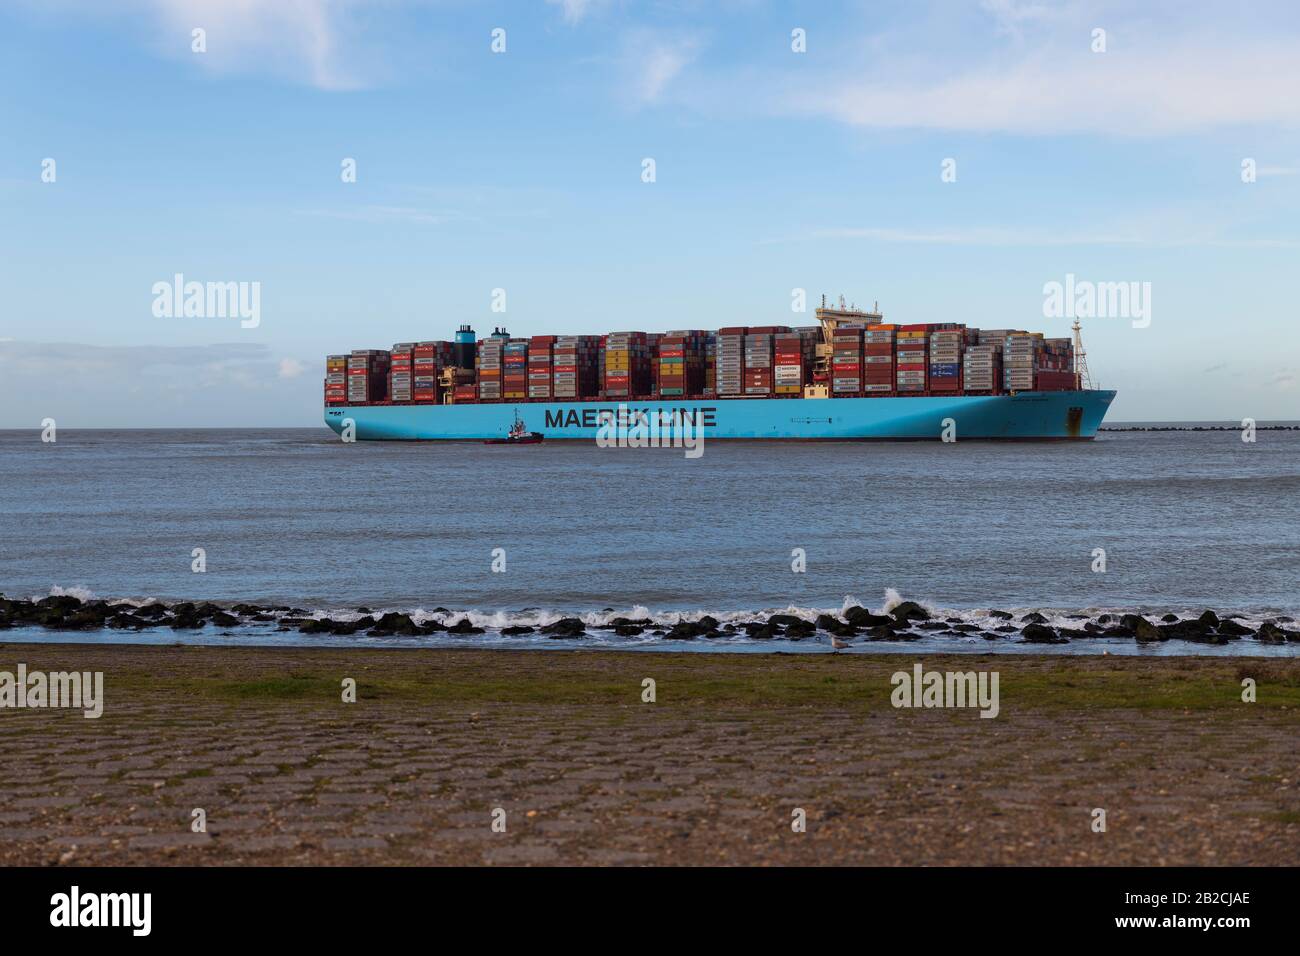 Rotterdam,Holland,01-märz-2020:eines der größten Containerschiffe, die in rotterdam einfahren, der Import von Containern wird durch den Corona-Virus COVID-19 reduziert, normal, dass diese Schiffe häufiger einfahren Stockfoto